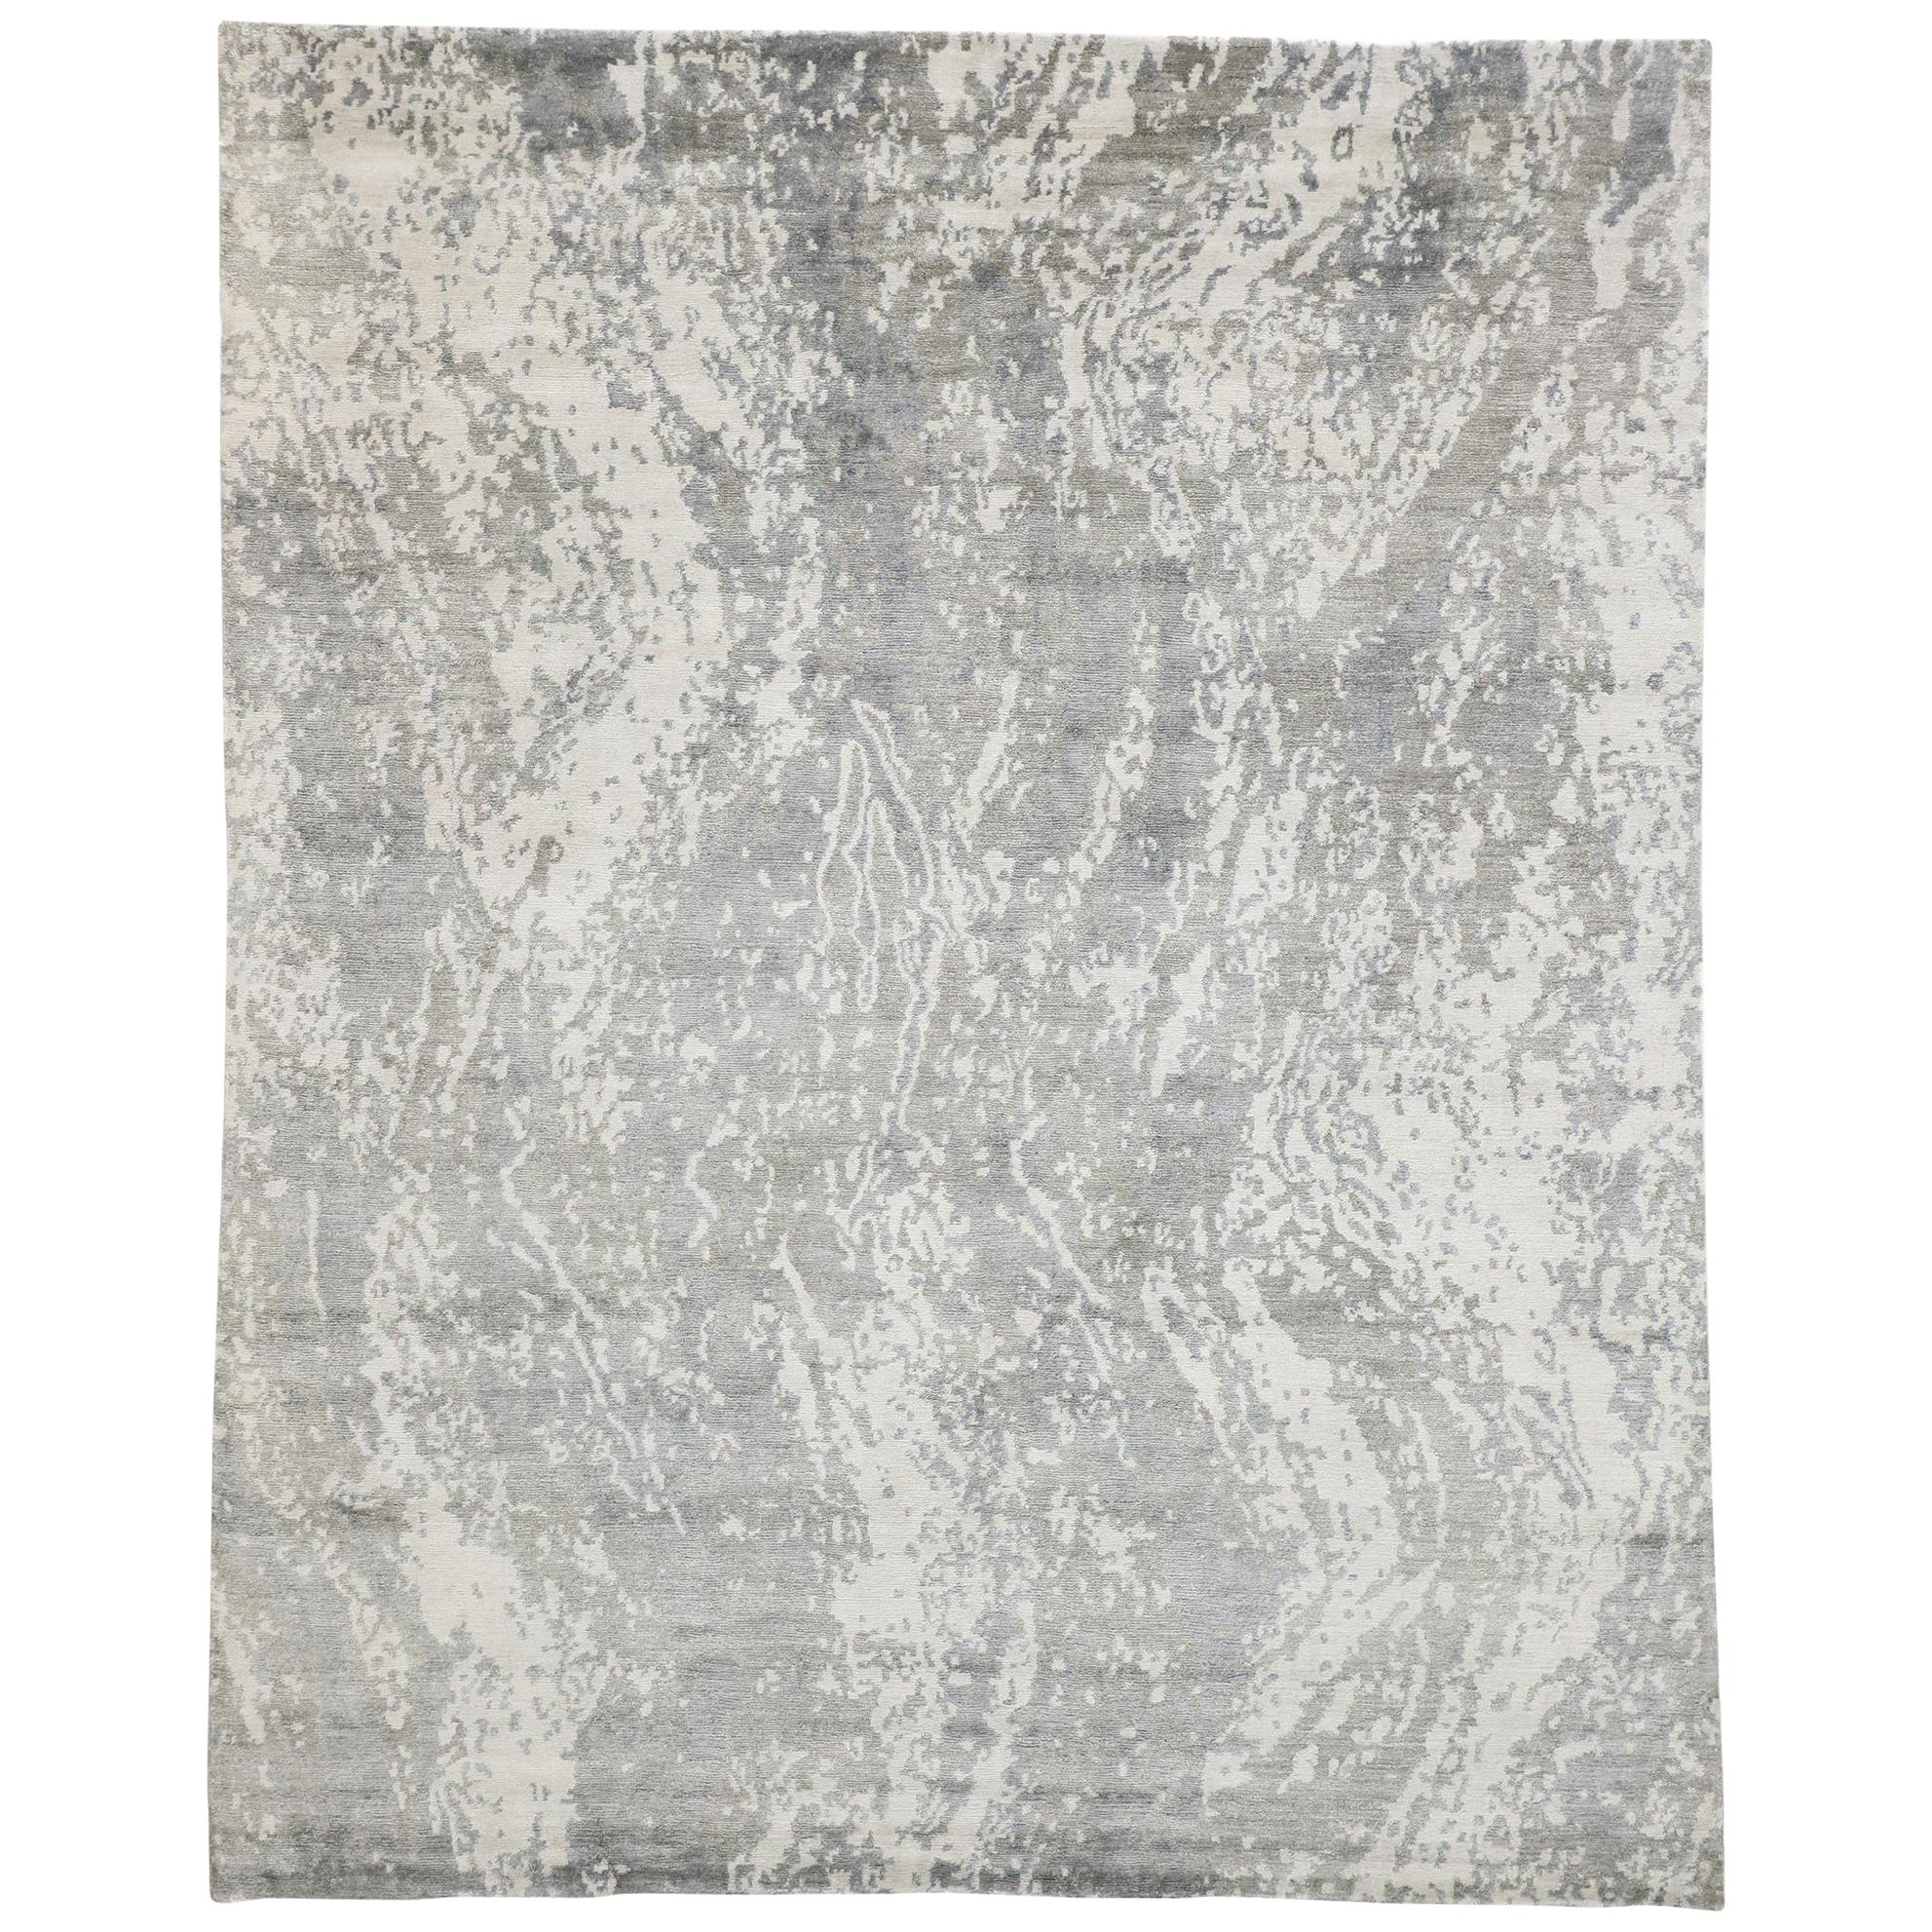 Zeitgenössischer grauer Teppich im Grunge-Art-Stil